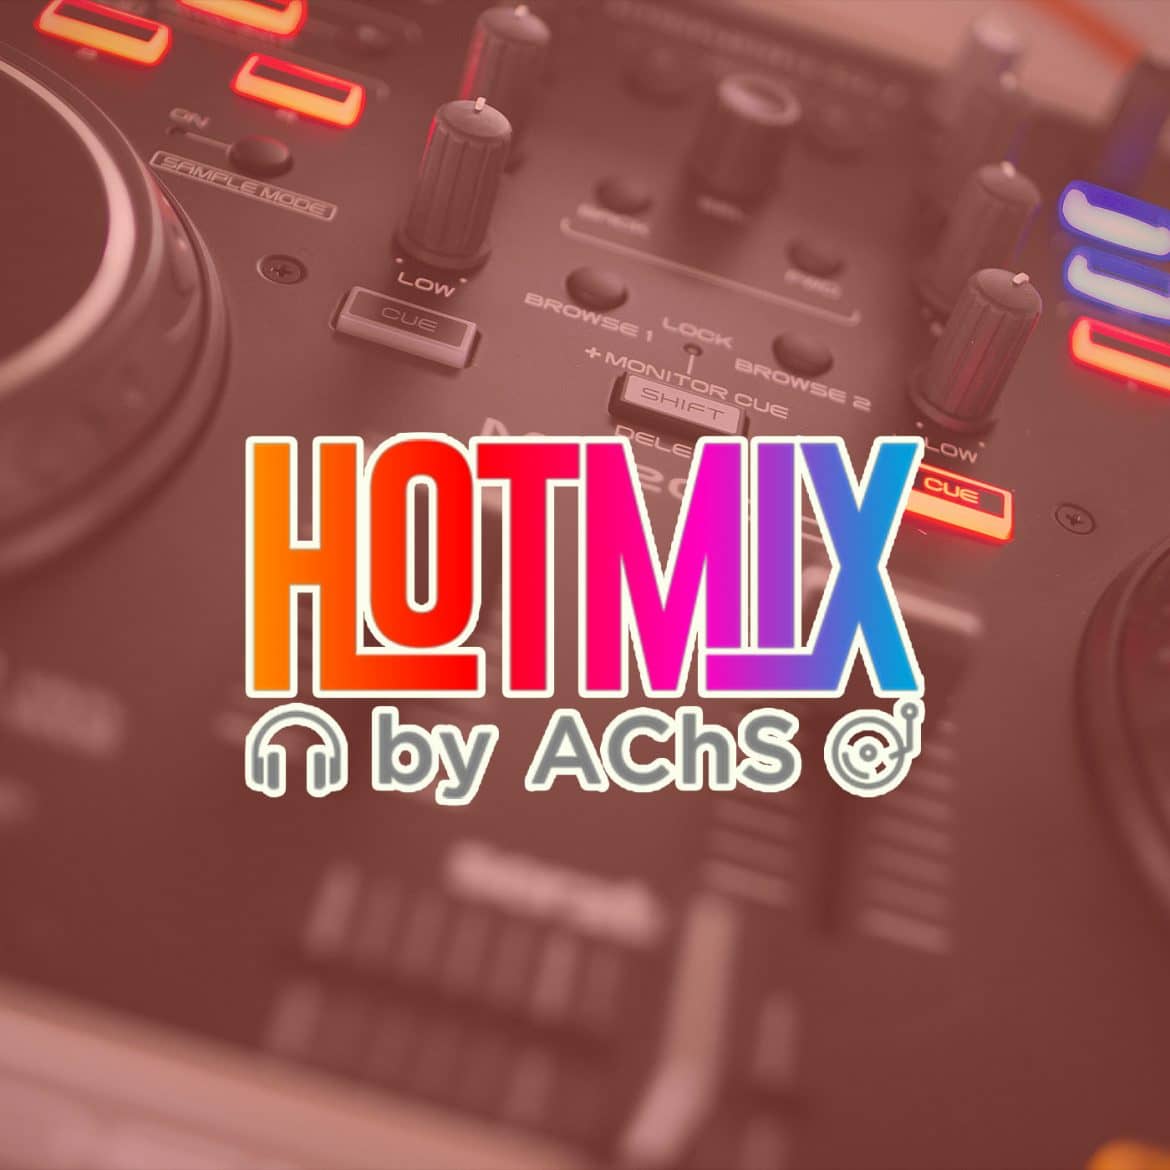 Defrag.mx Podcast HotMix Off The Chain Session Mixshow Música Mezclada